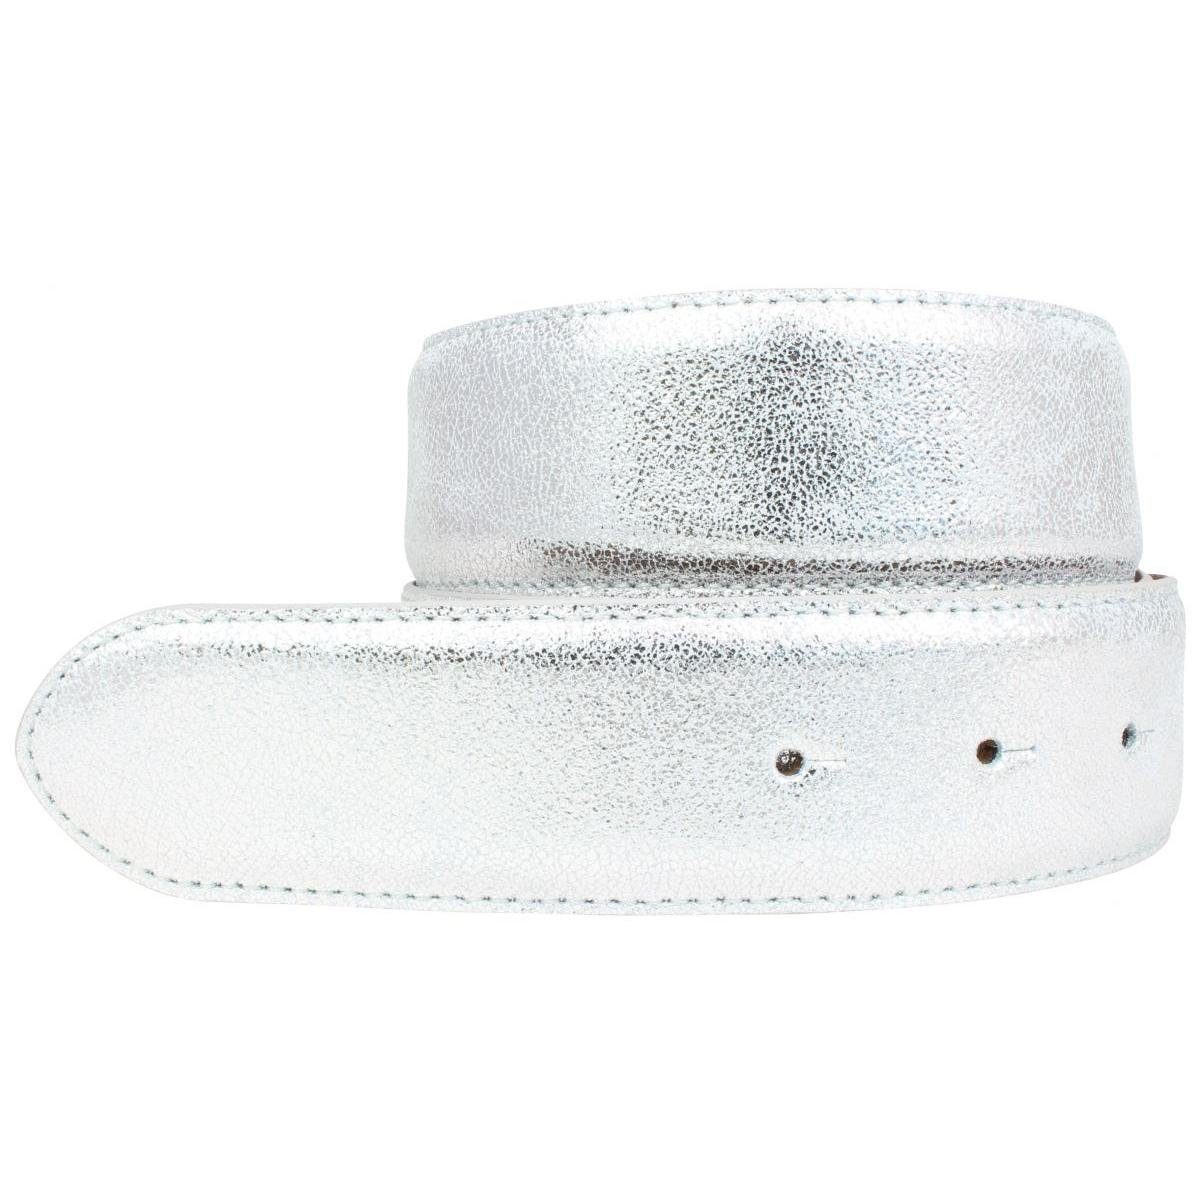 BELTINGER Ledergürtel Hochwertiger Gürtel Metall-Optik Echt Leder ohne Schnalle 4 cm - Meta Silber